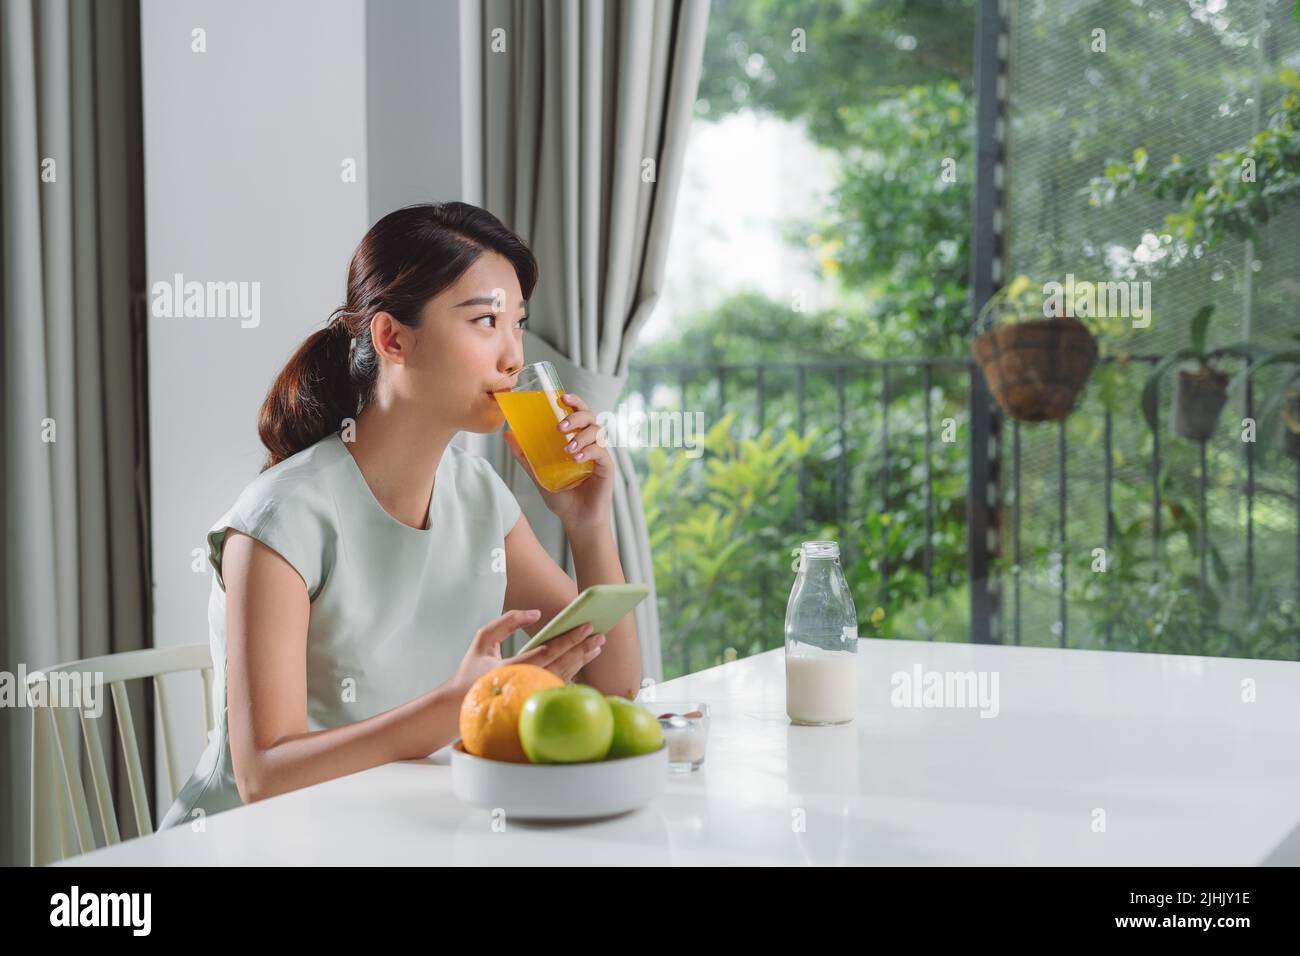 mujer tomando jugo de naranja mientras usa el teléfono móvil en casa Foto de stock